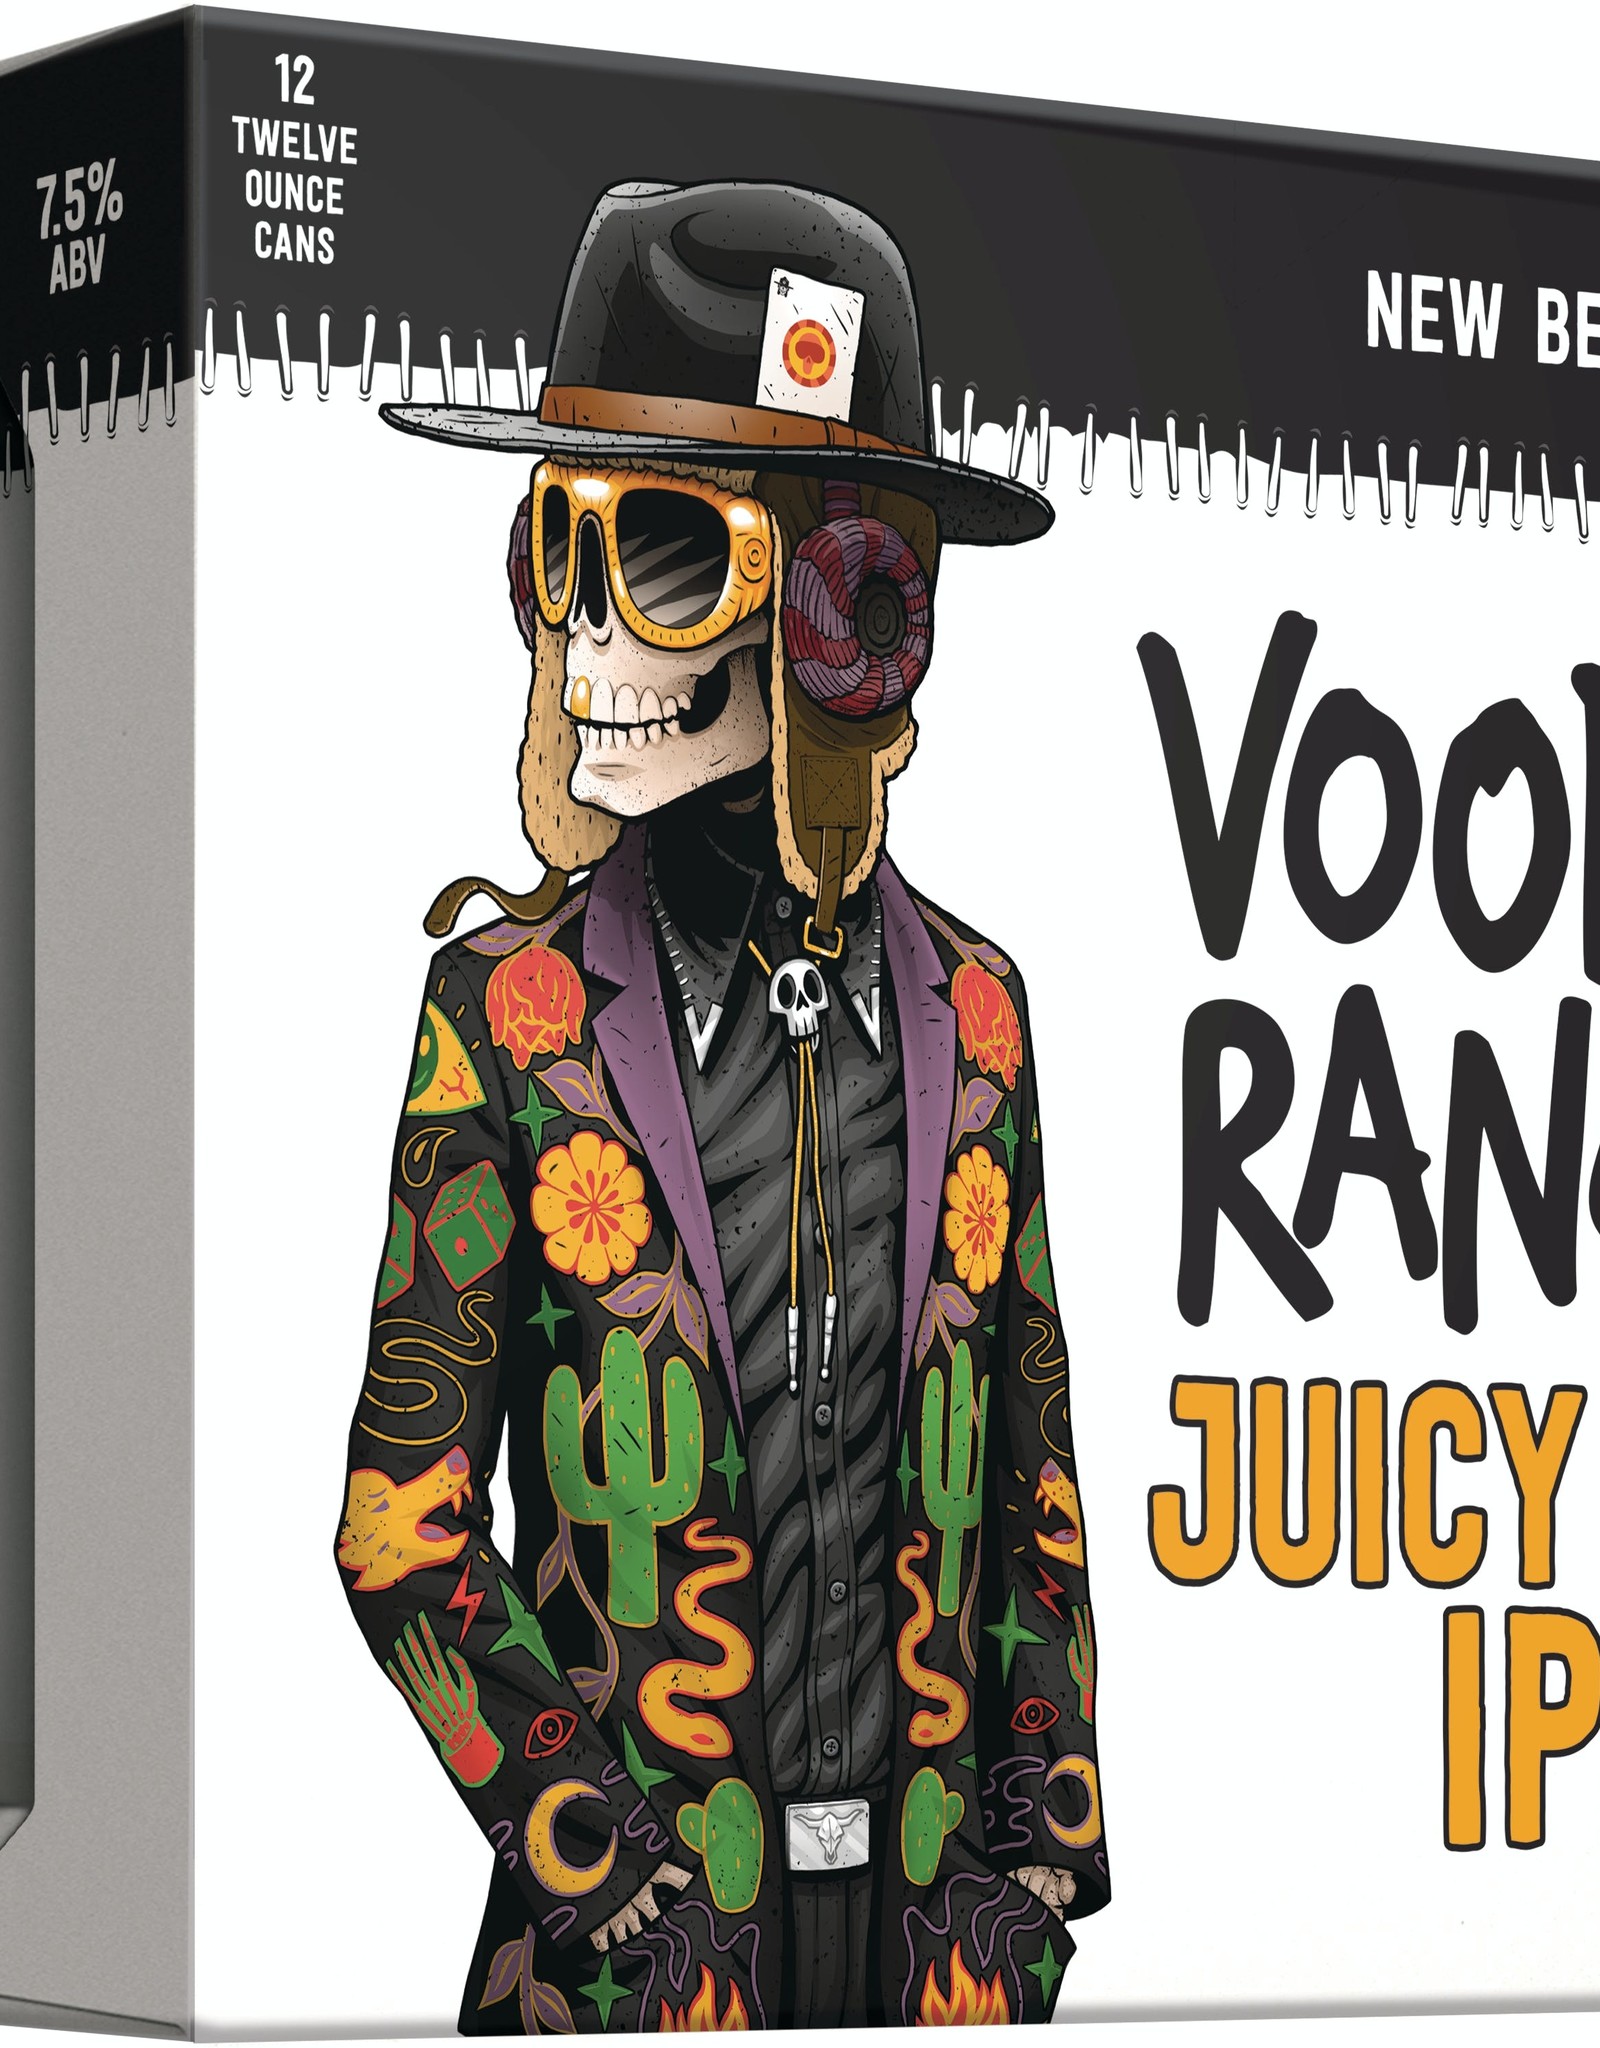 New Belgium Voodoo Ranger Juicy Haze IPA 12x12 oz cans